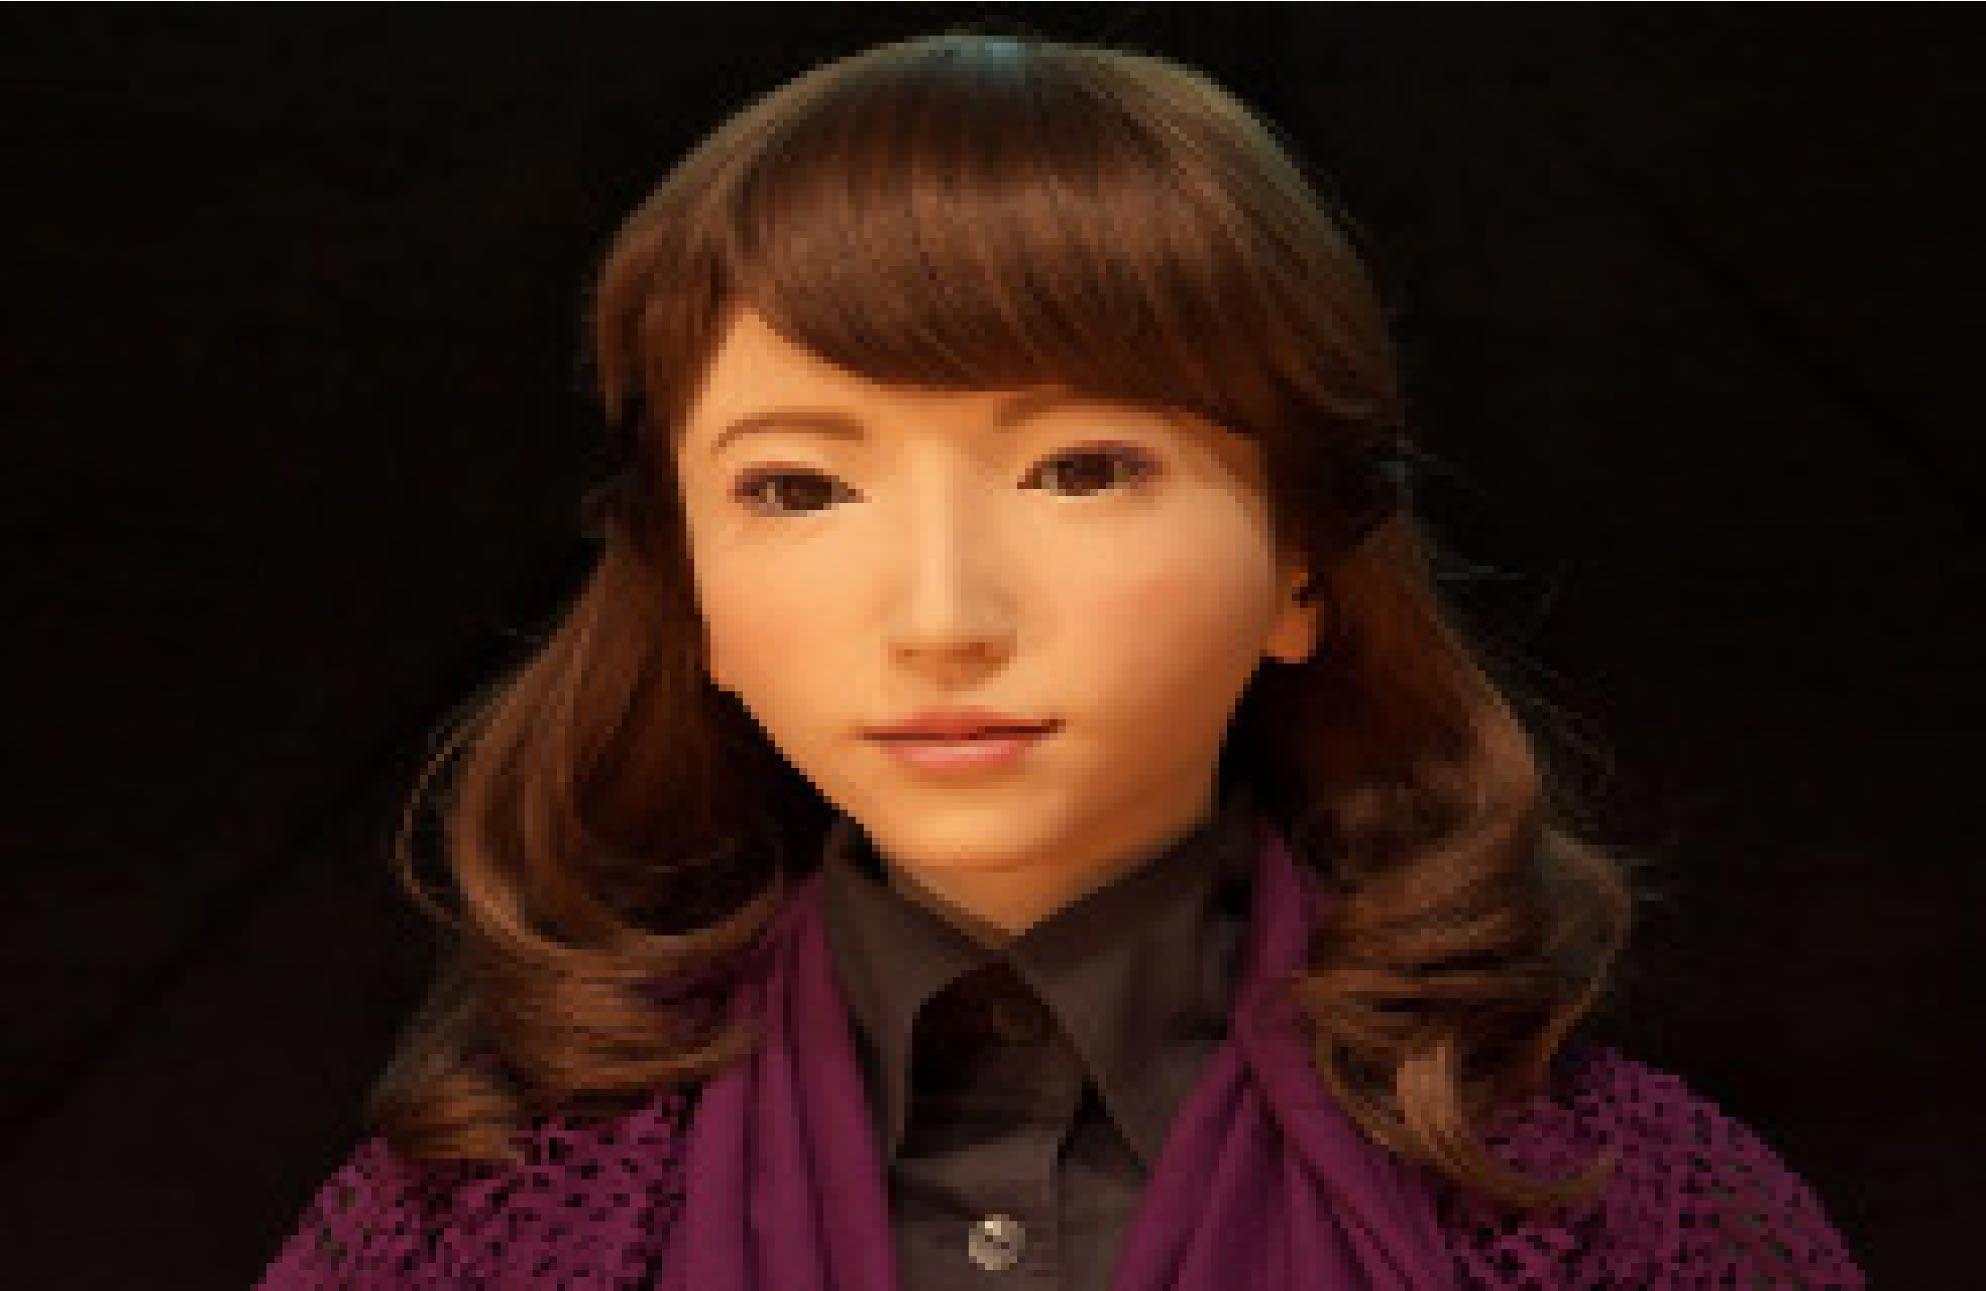 اریکا، روباتی که هنرپیشه شد